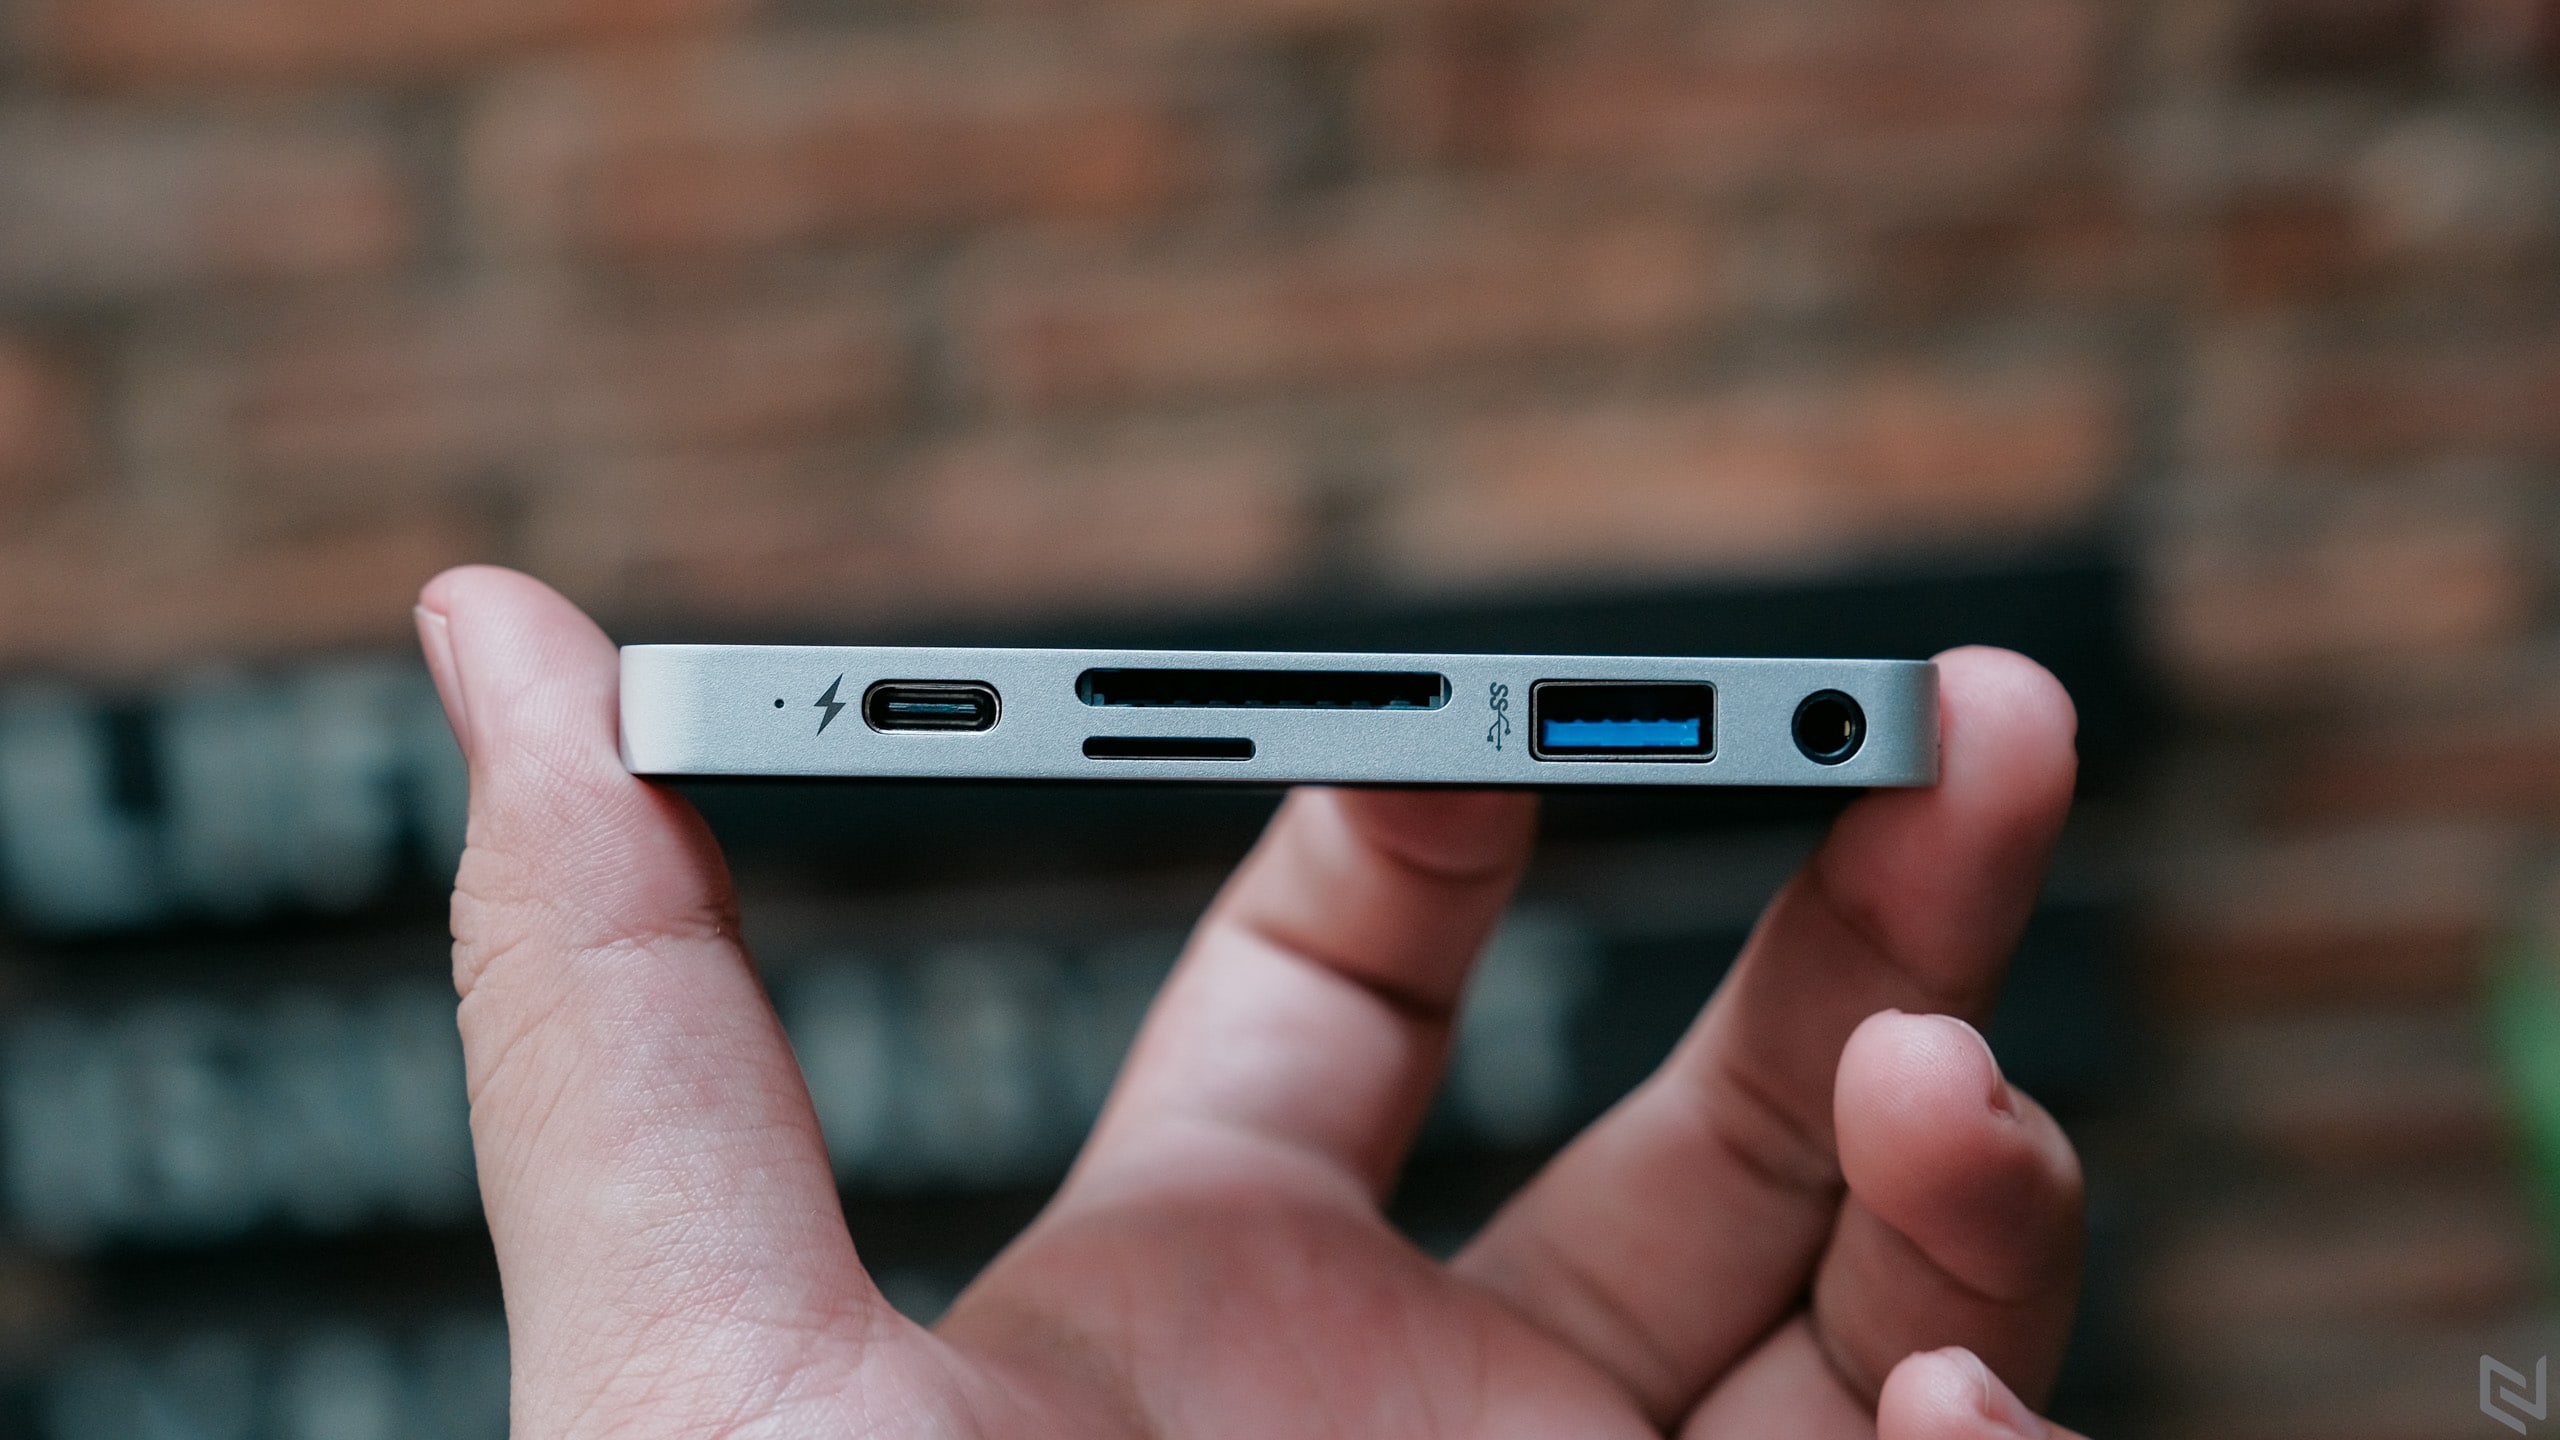 Trên tay HyperDrive USB-C Hub chuyên dụng cho iPad Pro 2018, mở rộng 6 cổng, dùng được cho MacBook